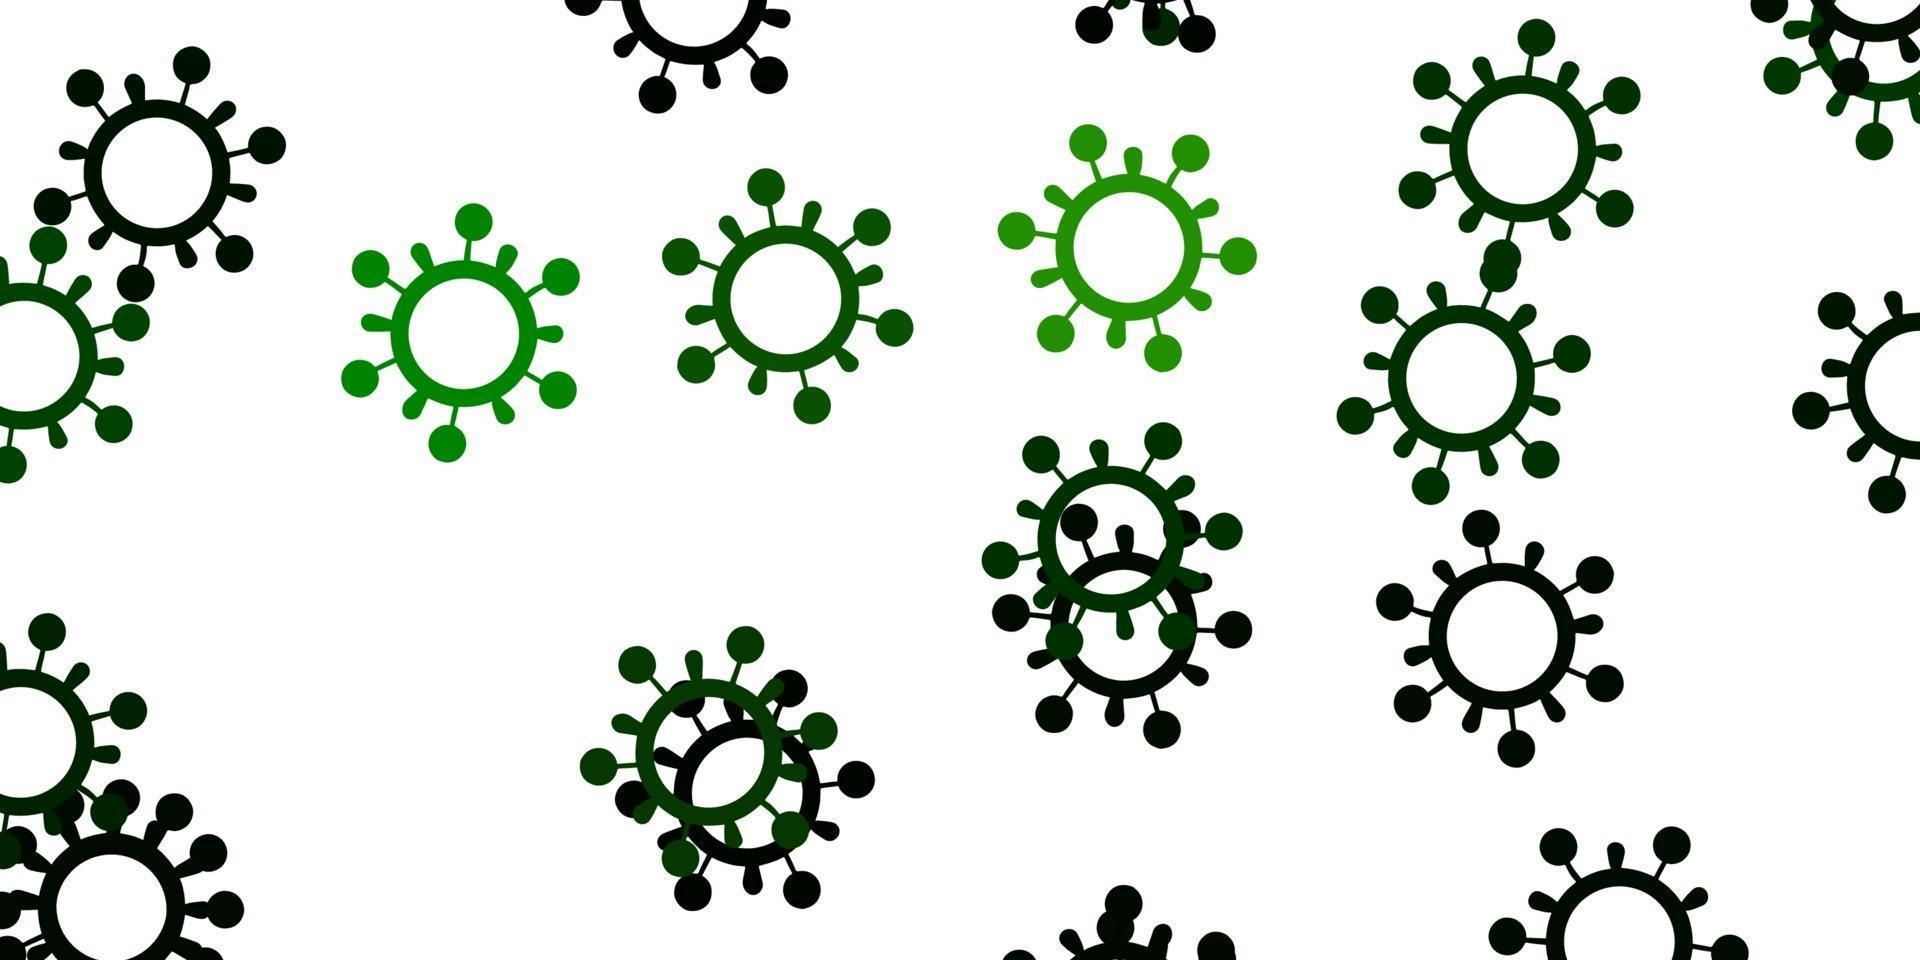 padrão de vetor verde claro com elementos de coronavírus.